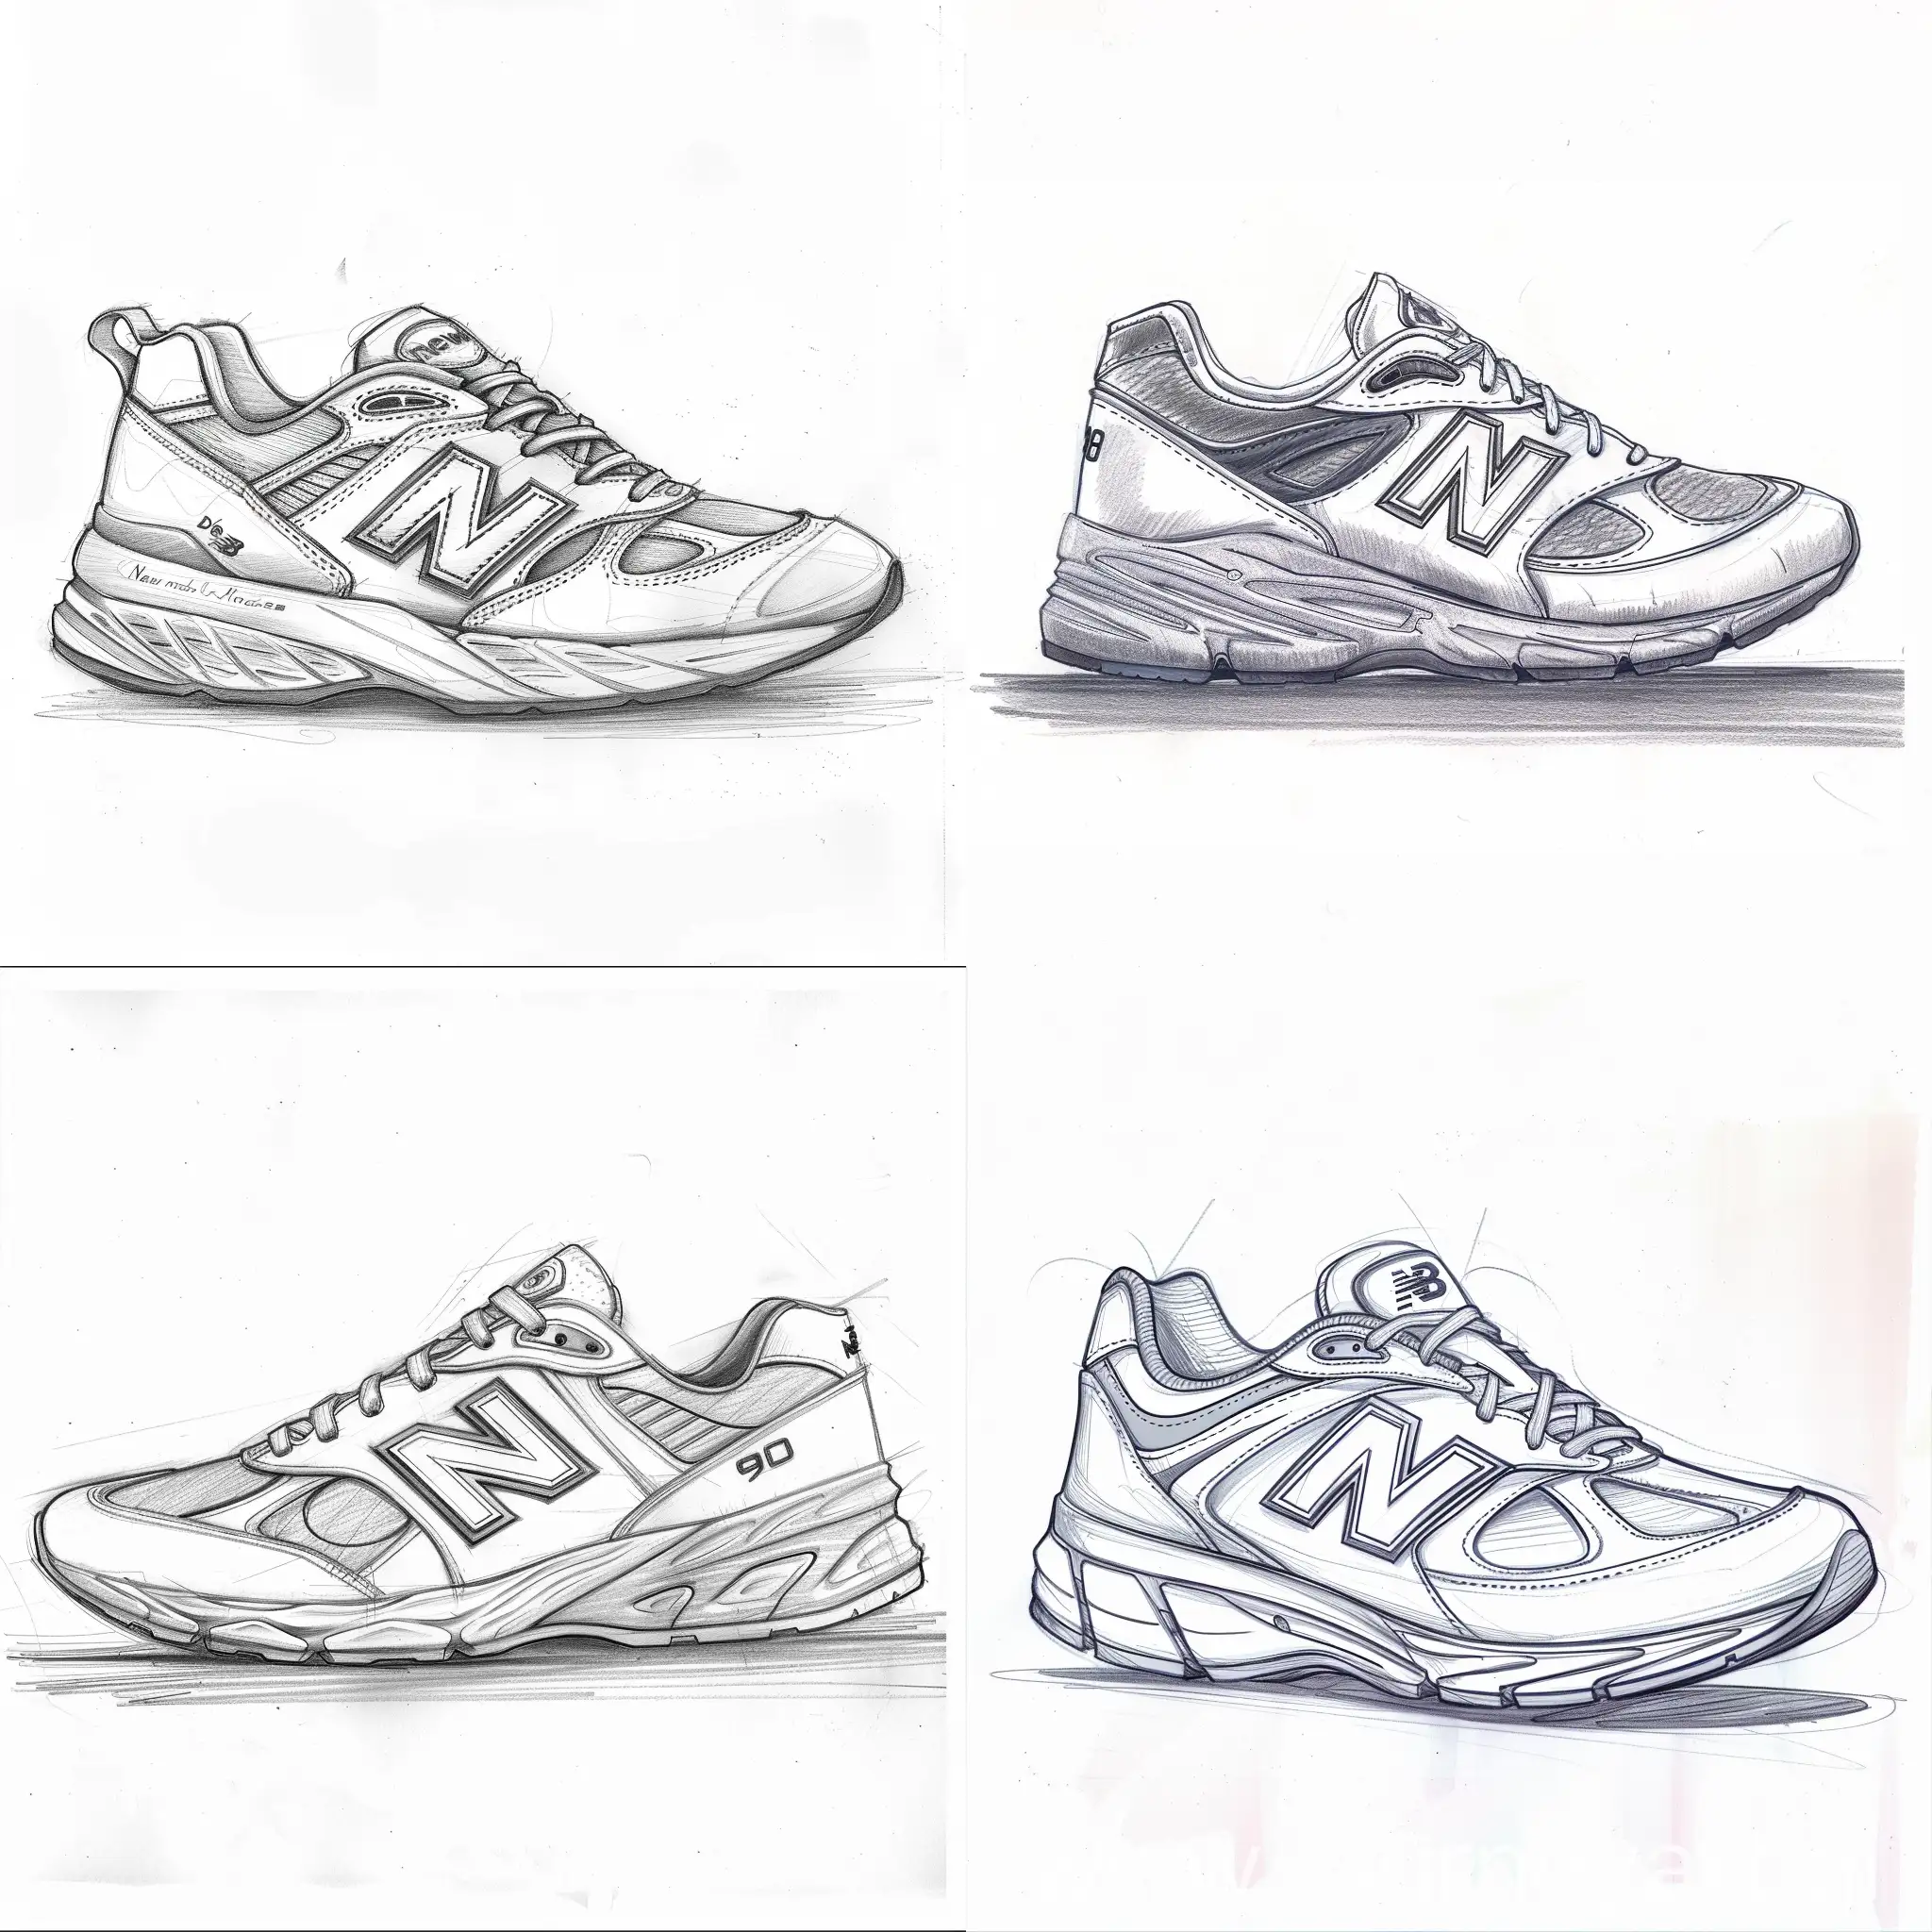 sneaker design like new ballence 990v4, sketch